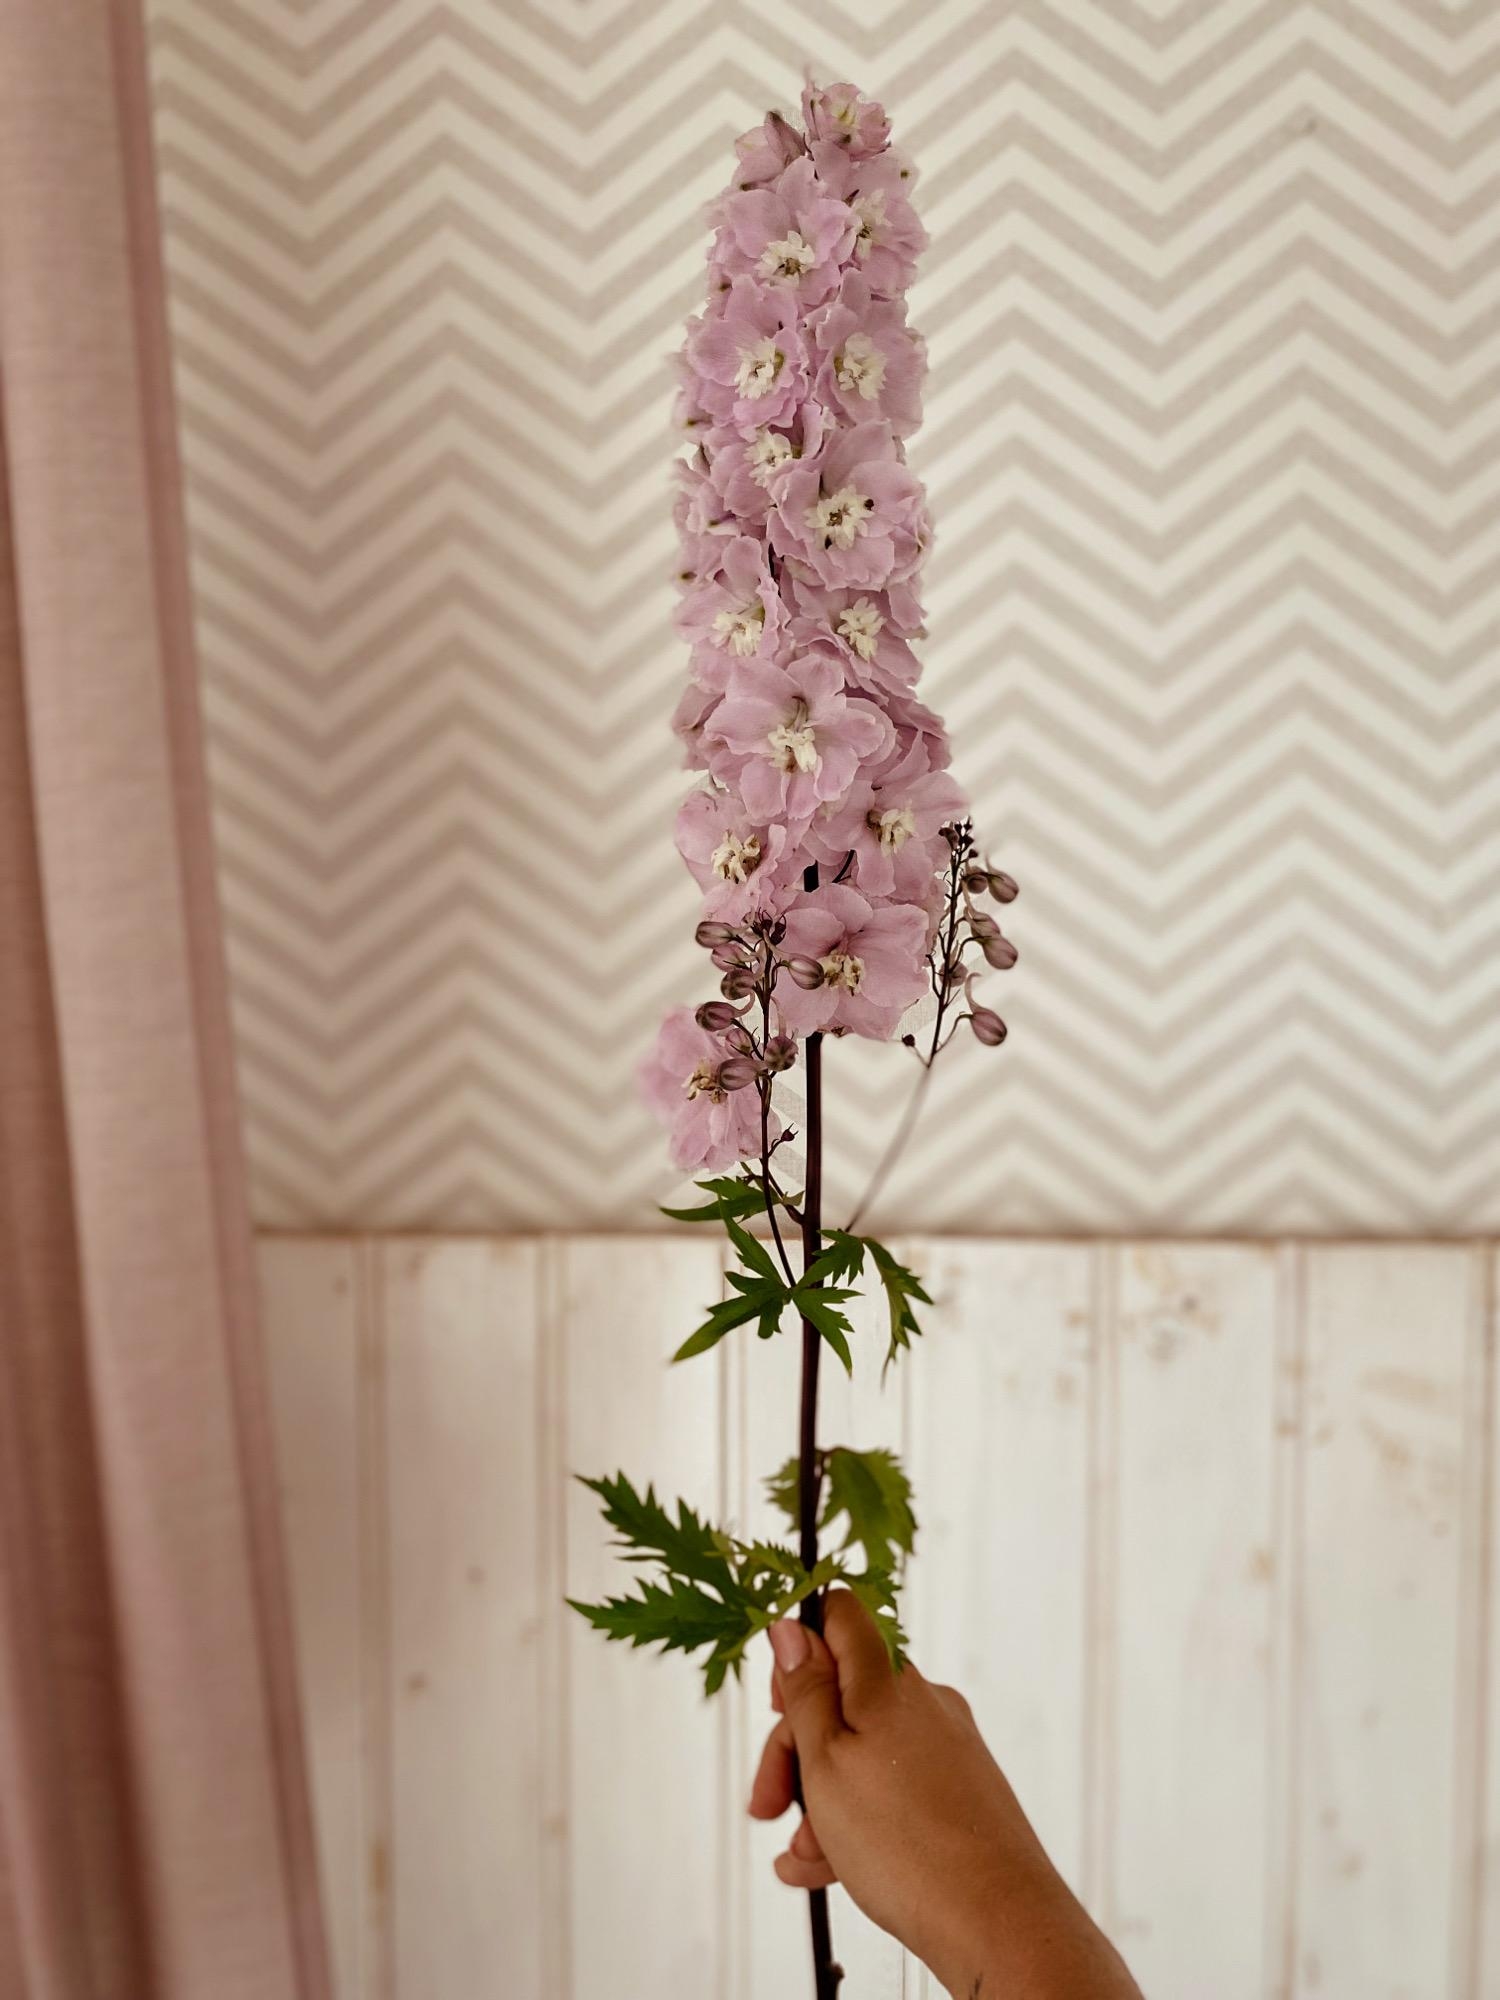 Für mich eine der schönsten Sommerblumen.
#rittersporn#blumenfotografie#blumenmädchen#delphinium#flowerlovers